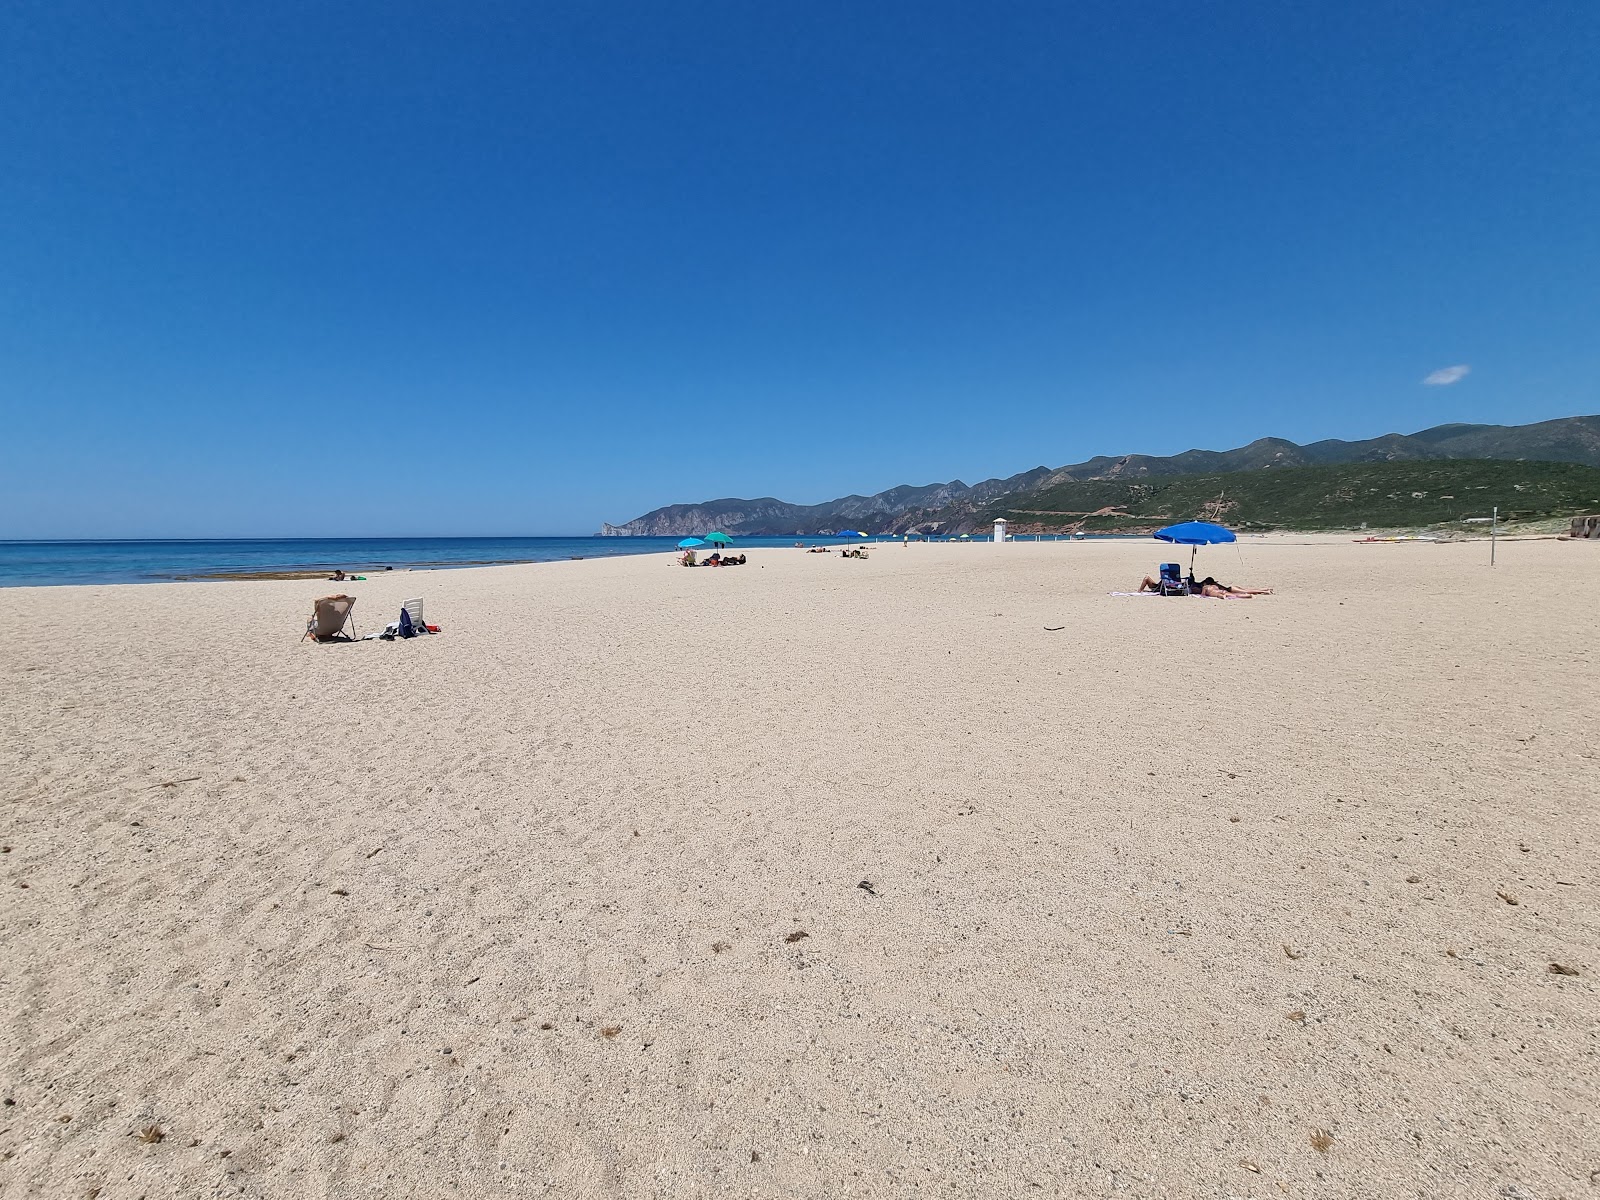 Foto af Spiaggia di Plagemesu - populært sted blandt afslapningskendere